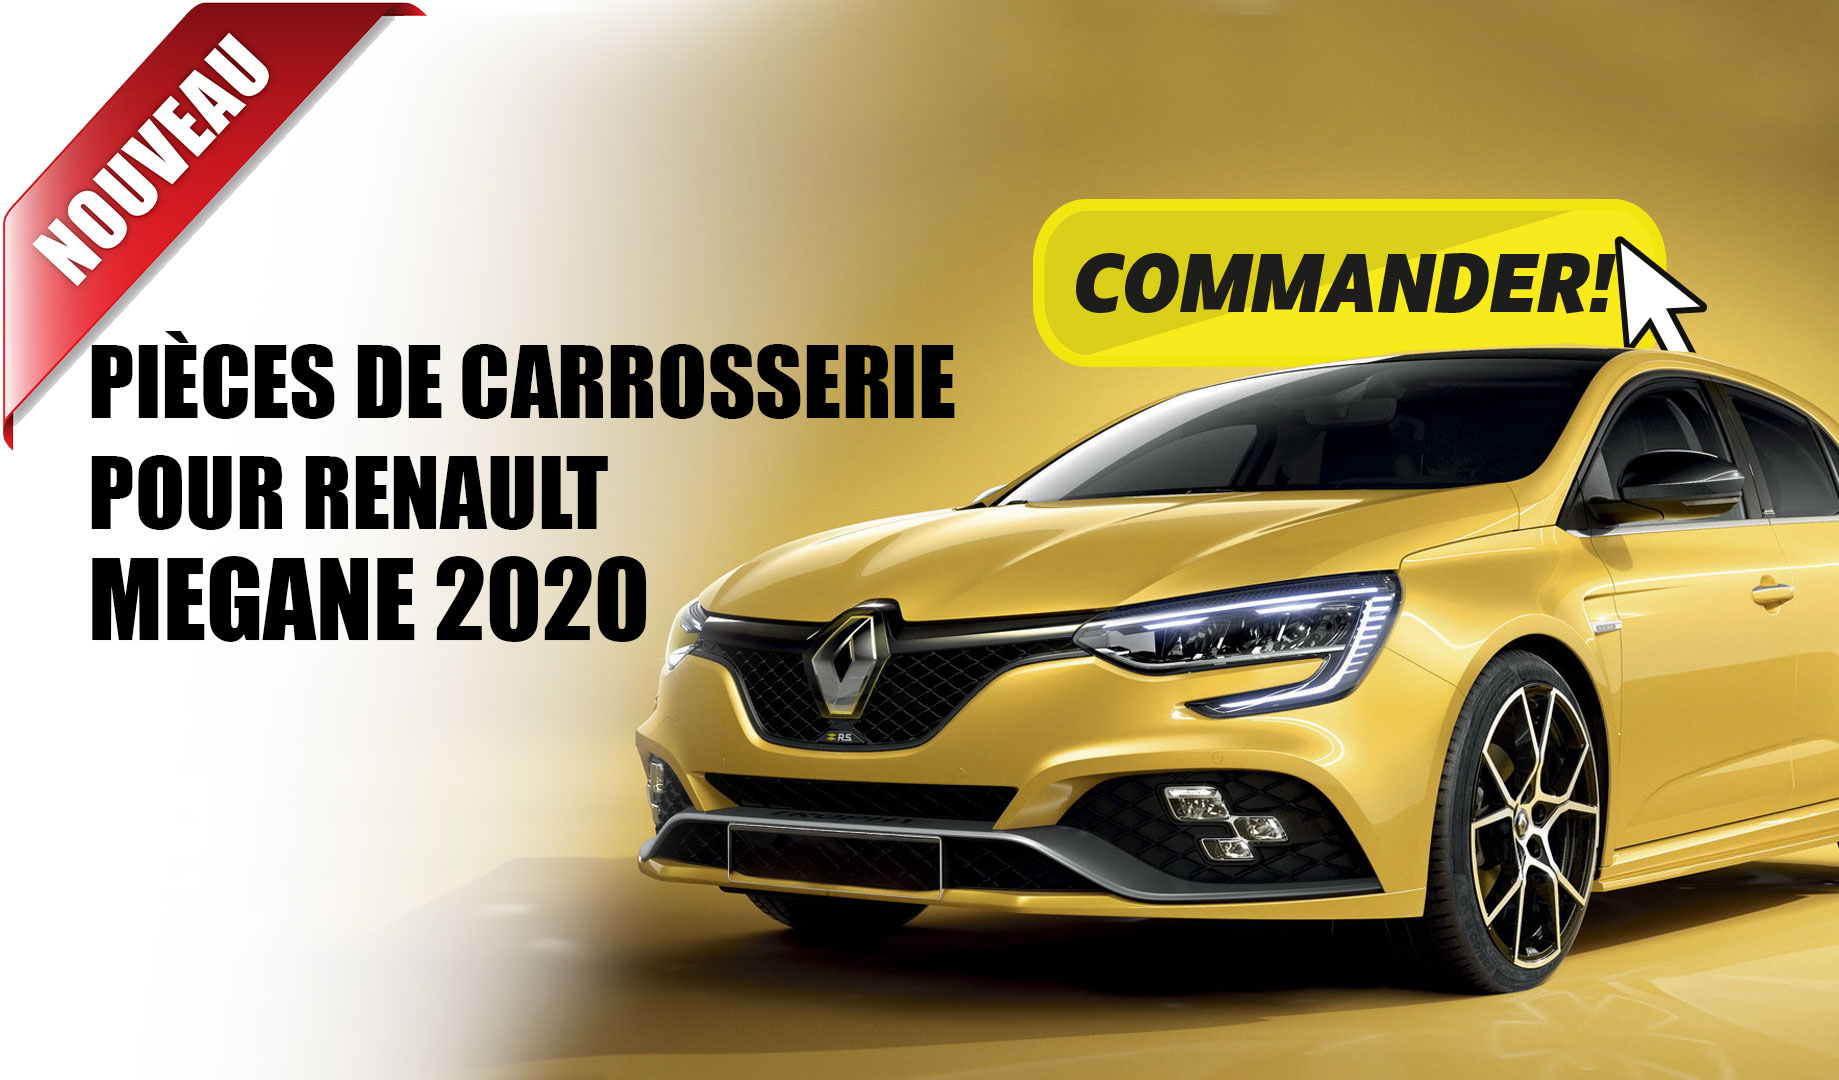 Pièces de carrosserie Renault Megane 2020 